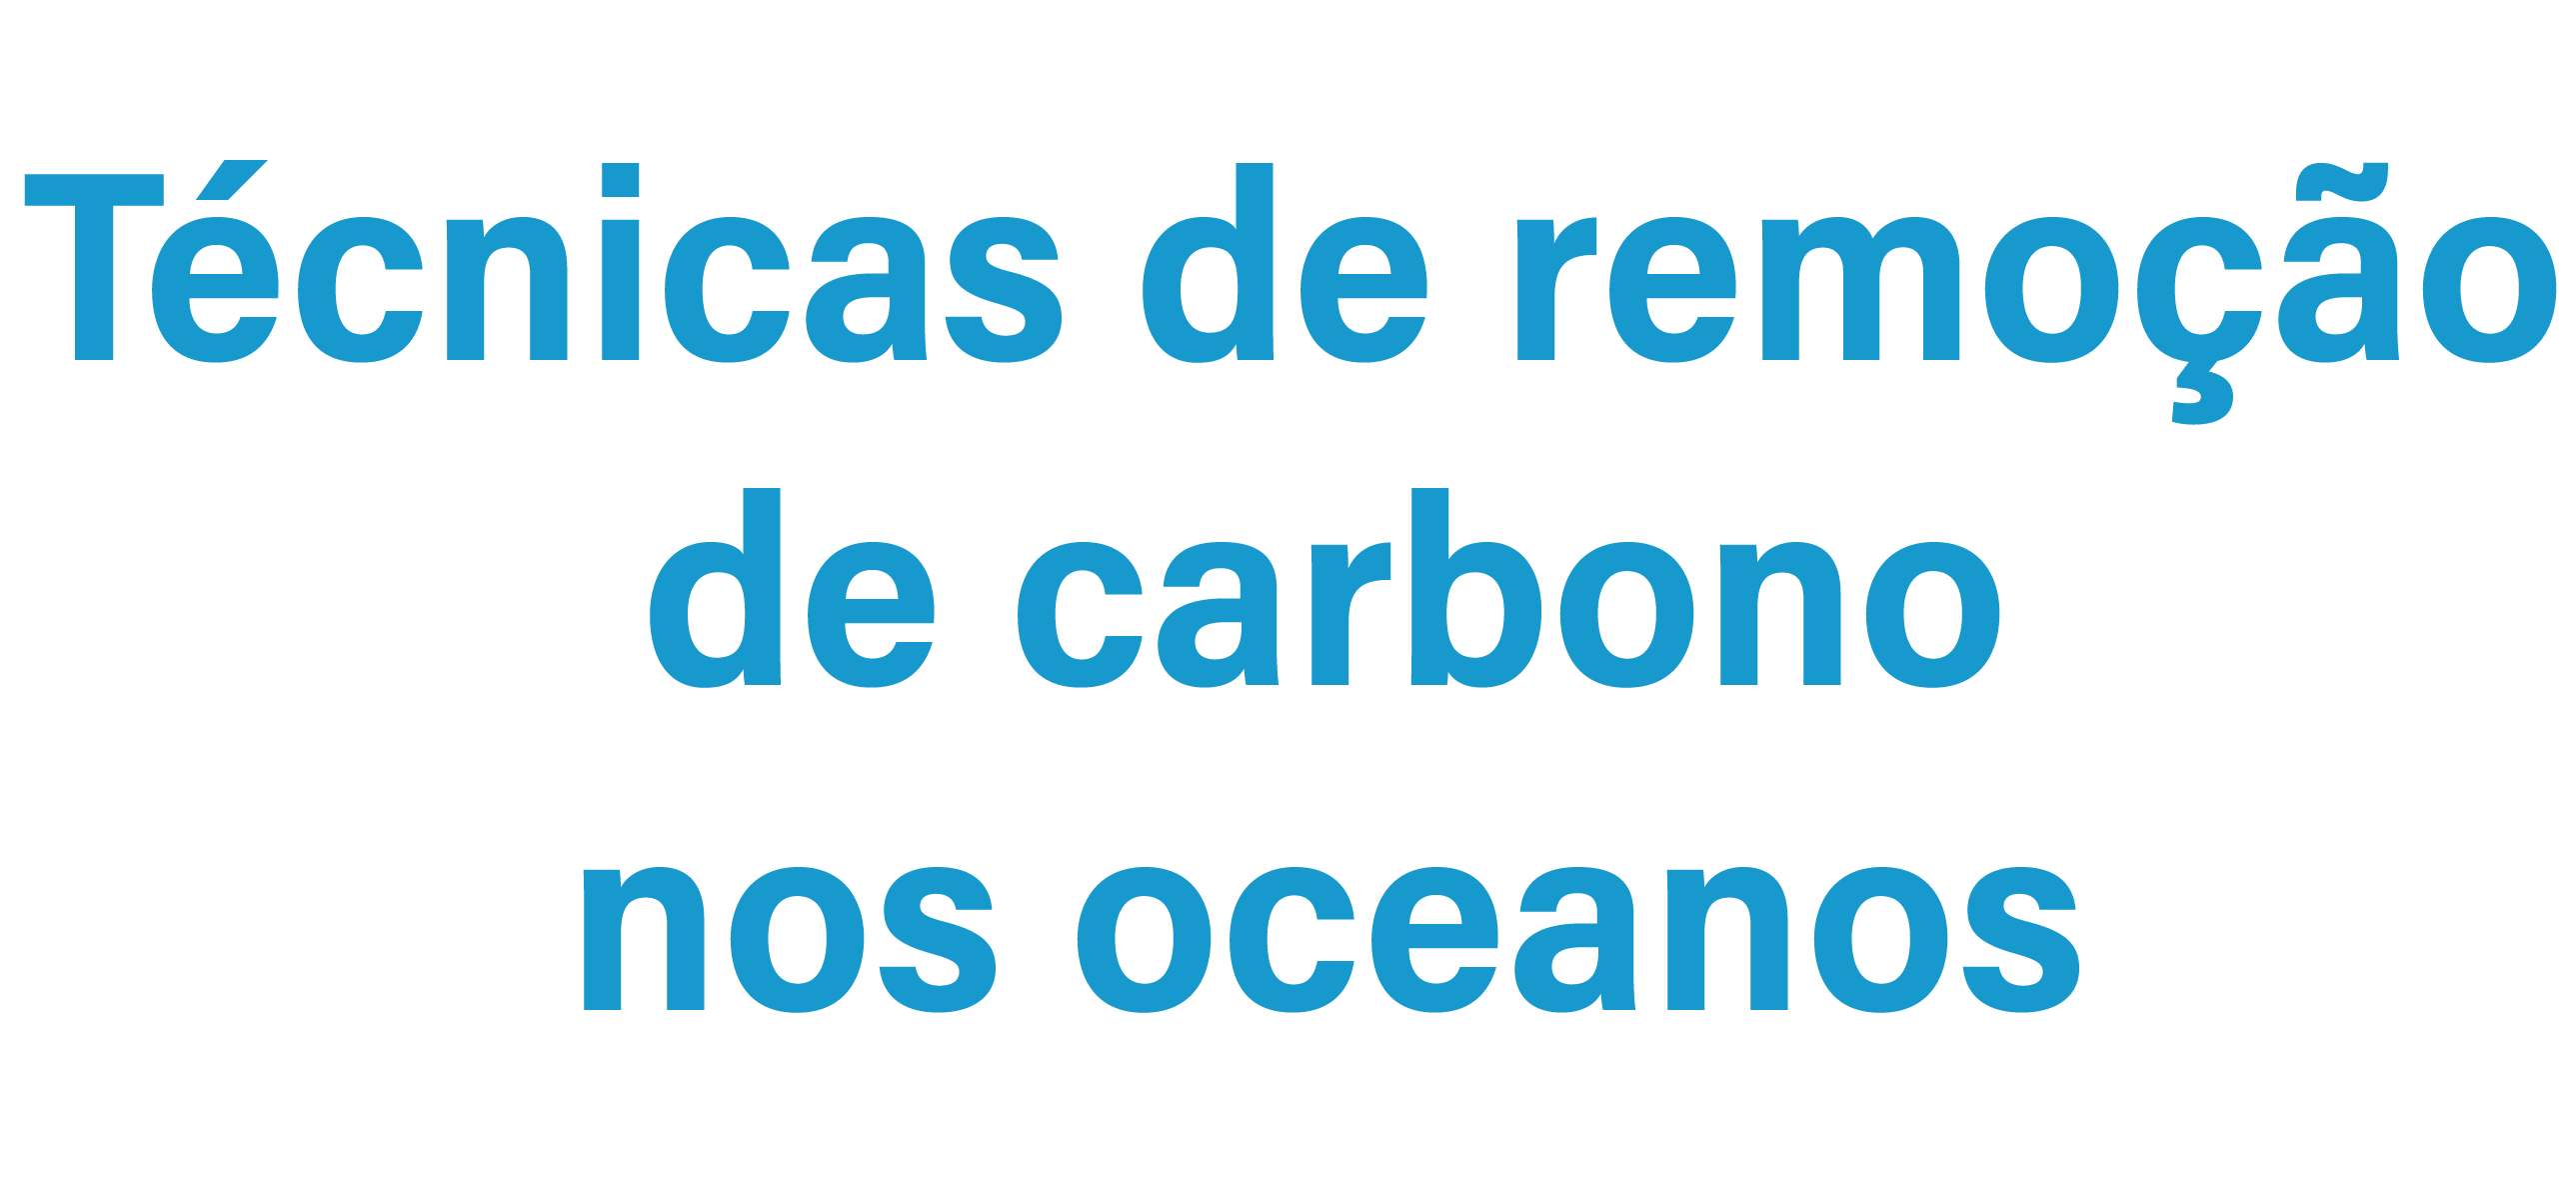 técnicas de remoção de carbono dos oceanos